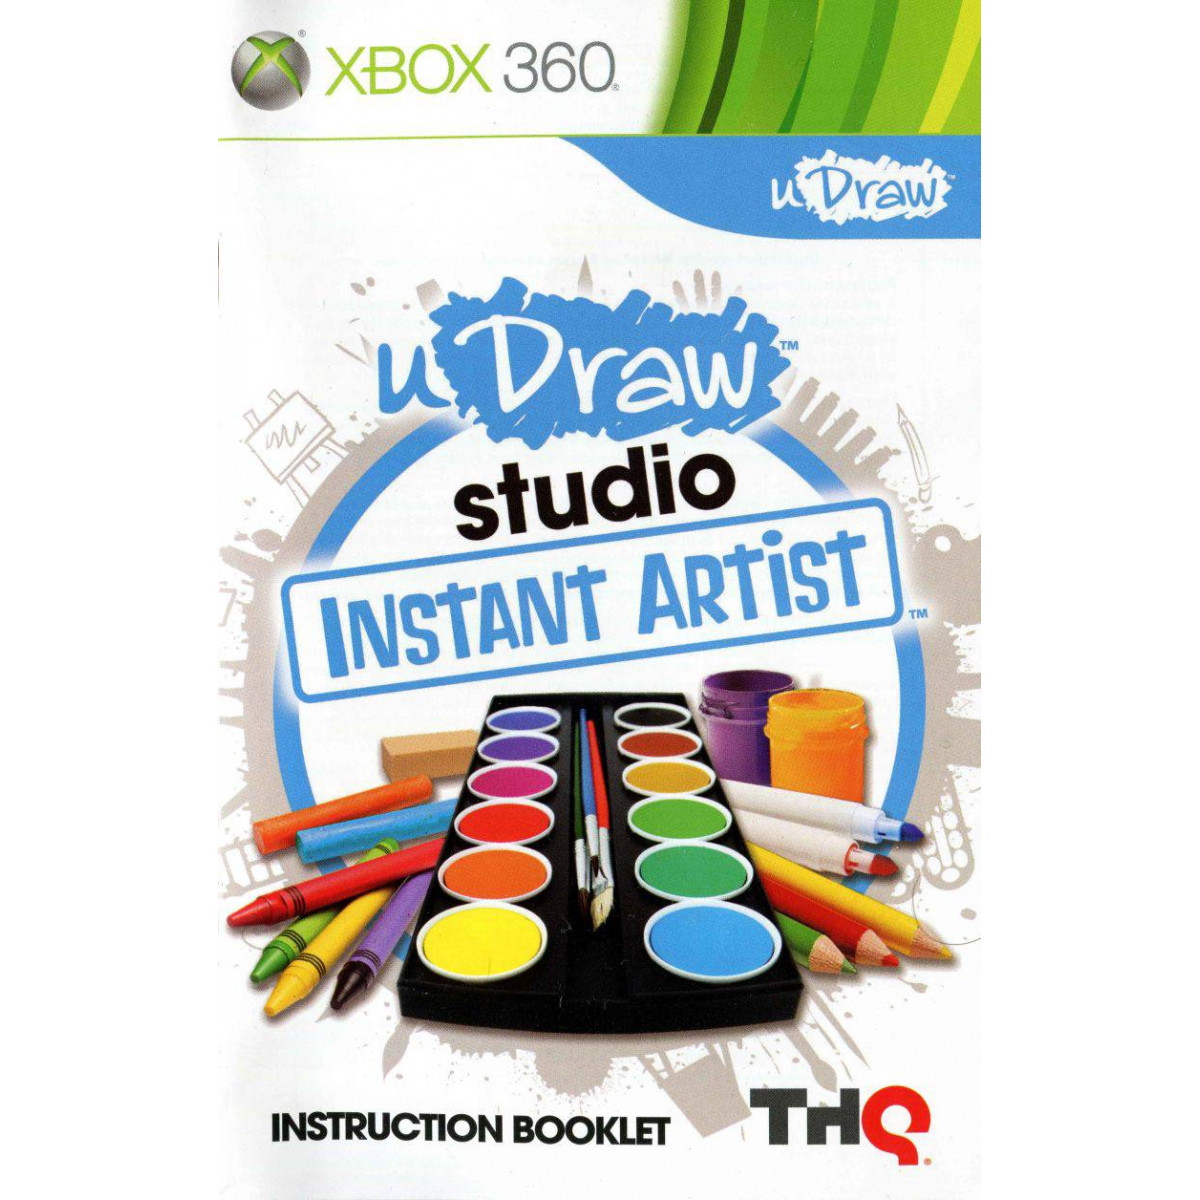 uDraw Studio Instant Artist (csak játékszoftver) - Xbox 360 Játékok